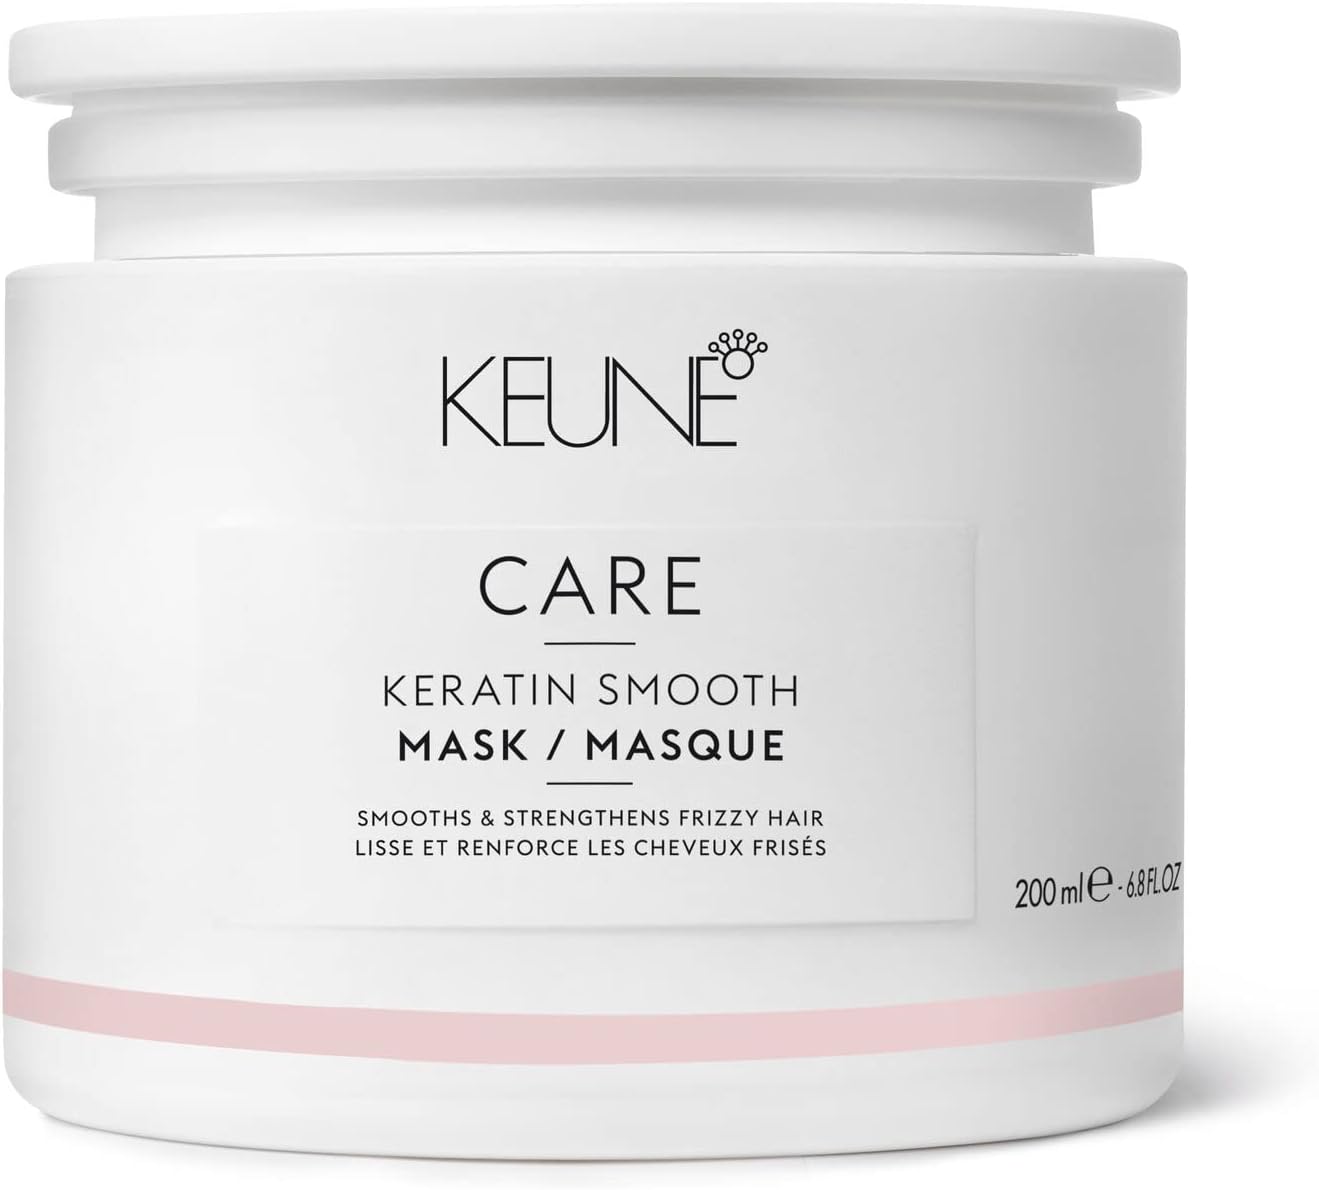 Care Keratin Smooth Mask, Keune, 200 ml vendidos